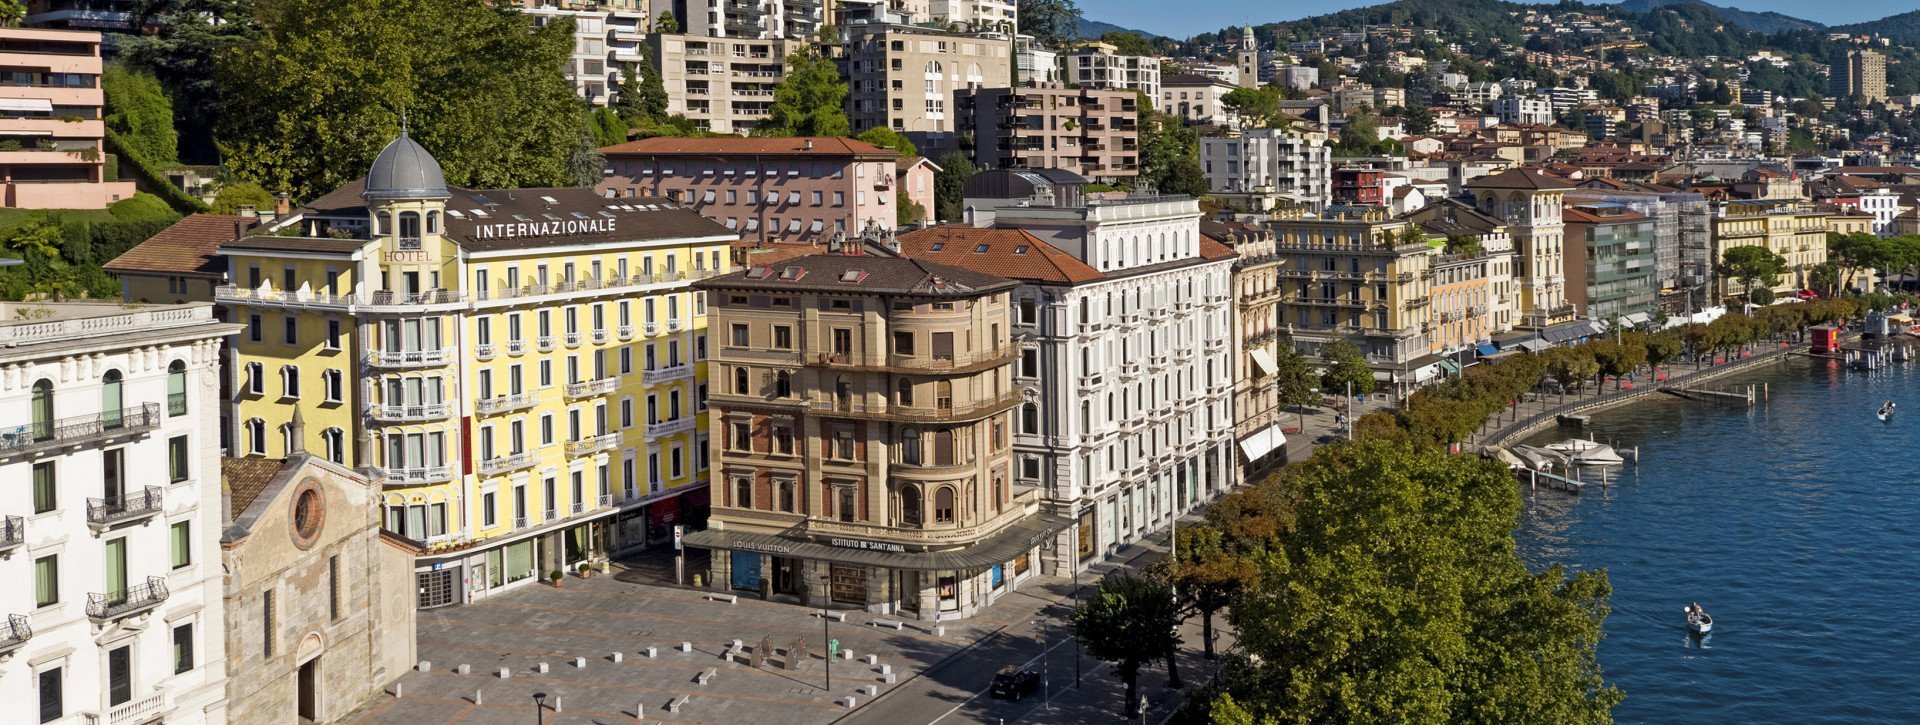 Hotel International au Lac Lugano im Zentrum und am See